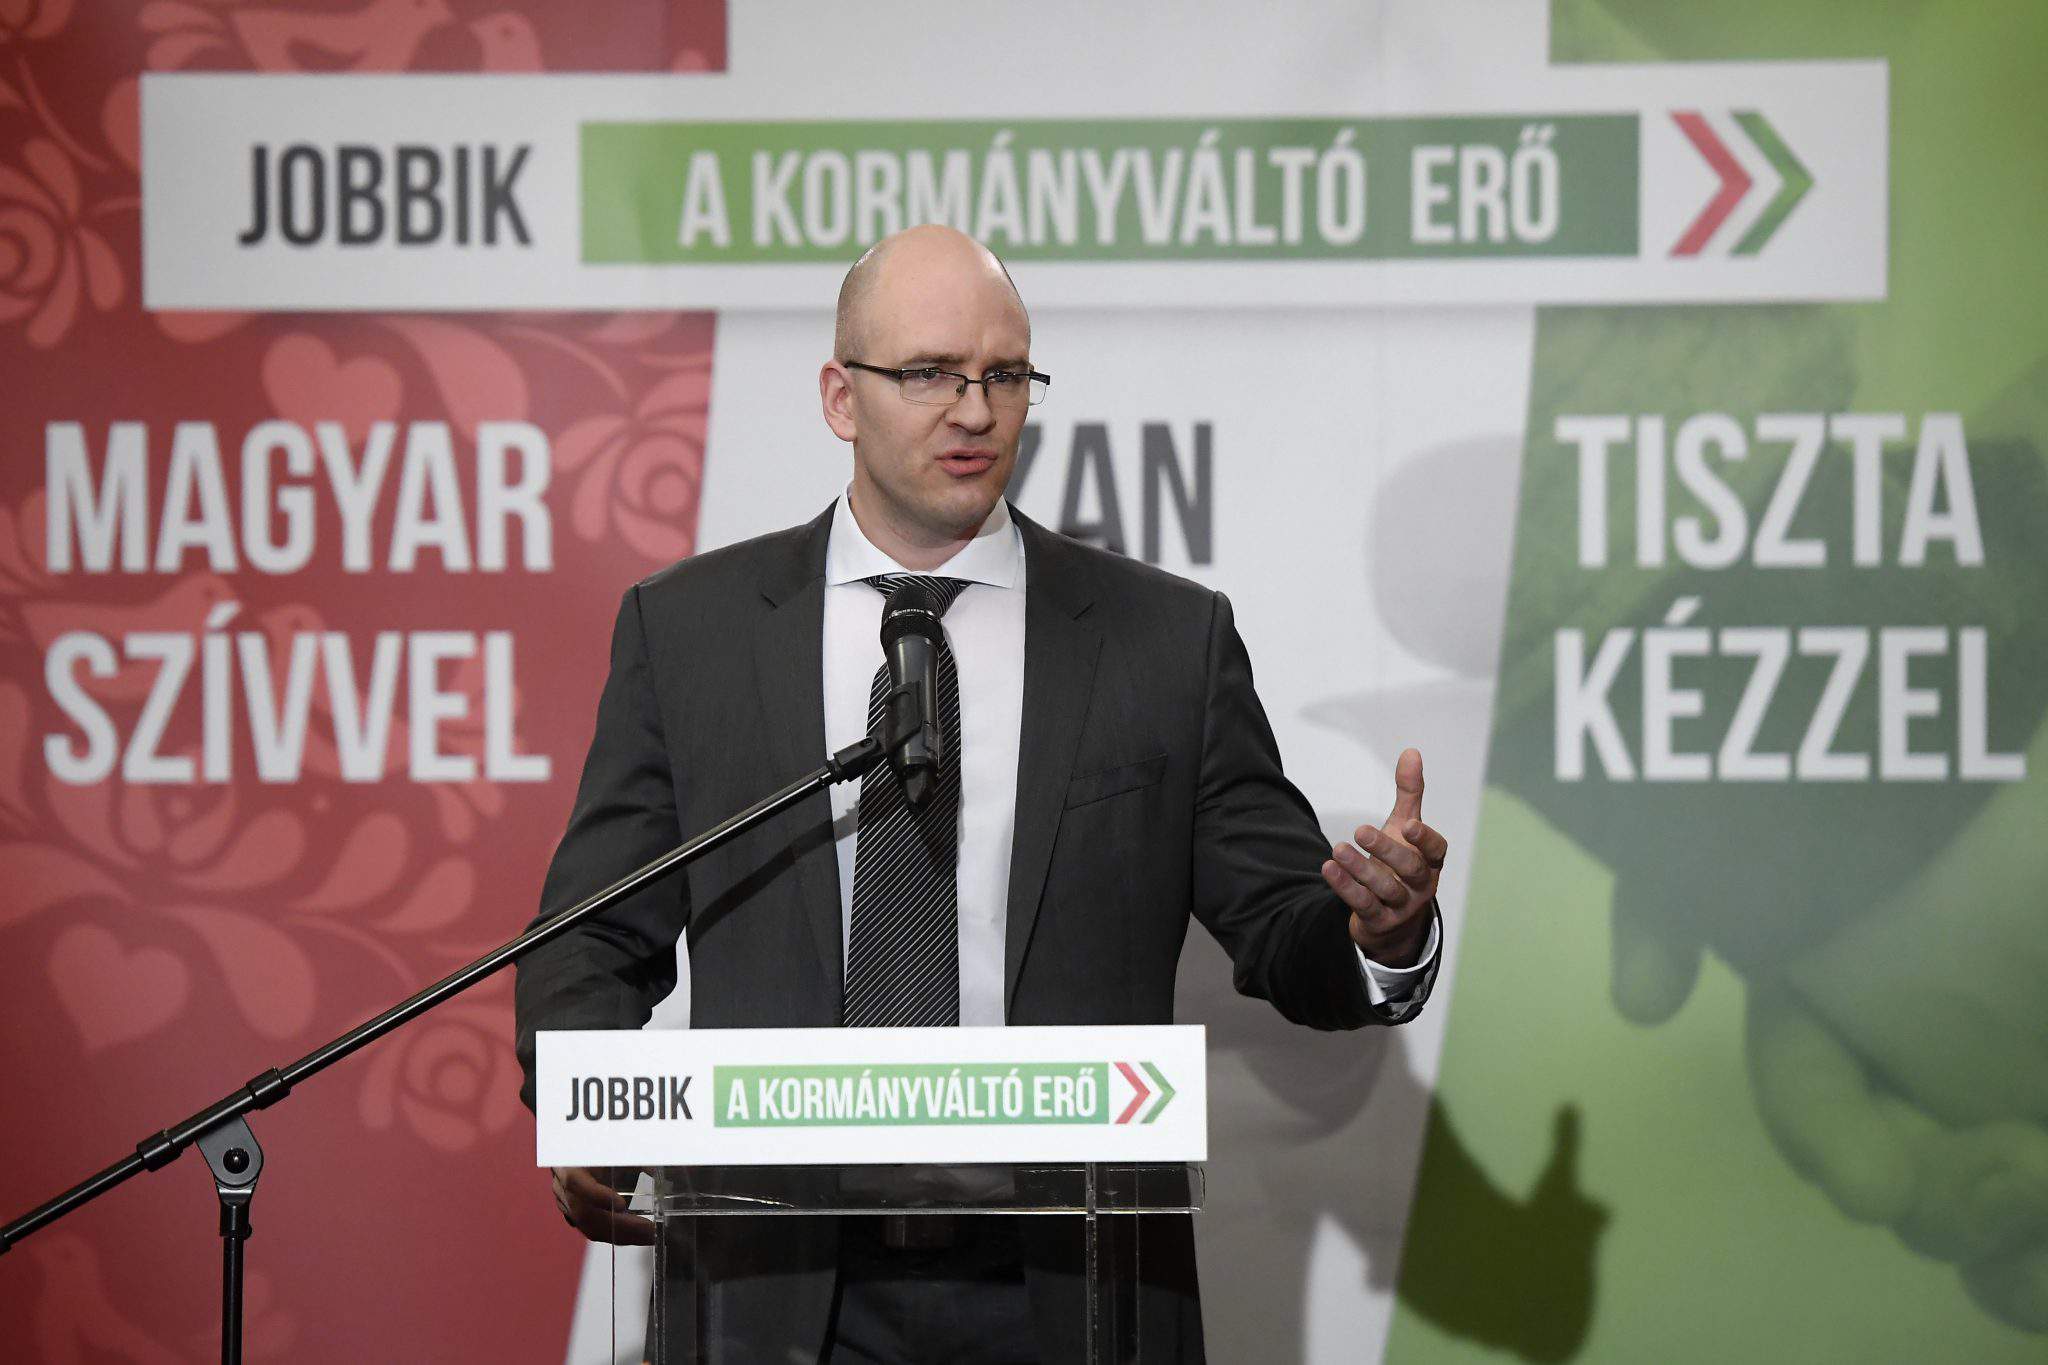 2018 年选举 - Jobbik 对选举结果提出上诉